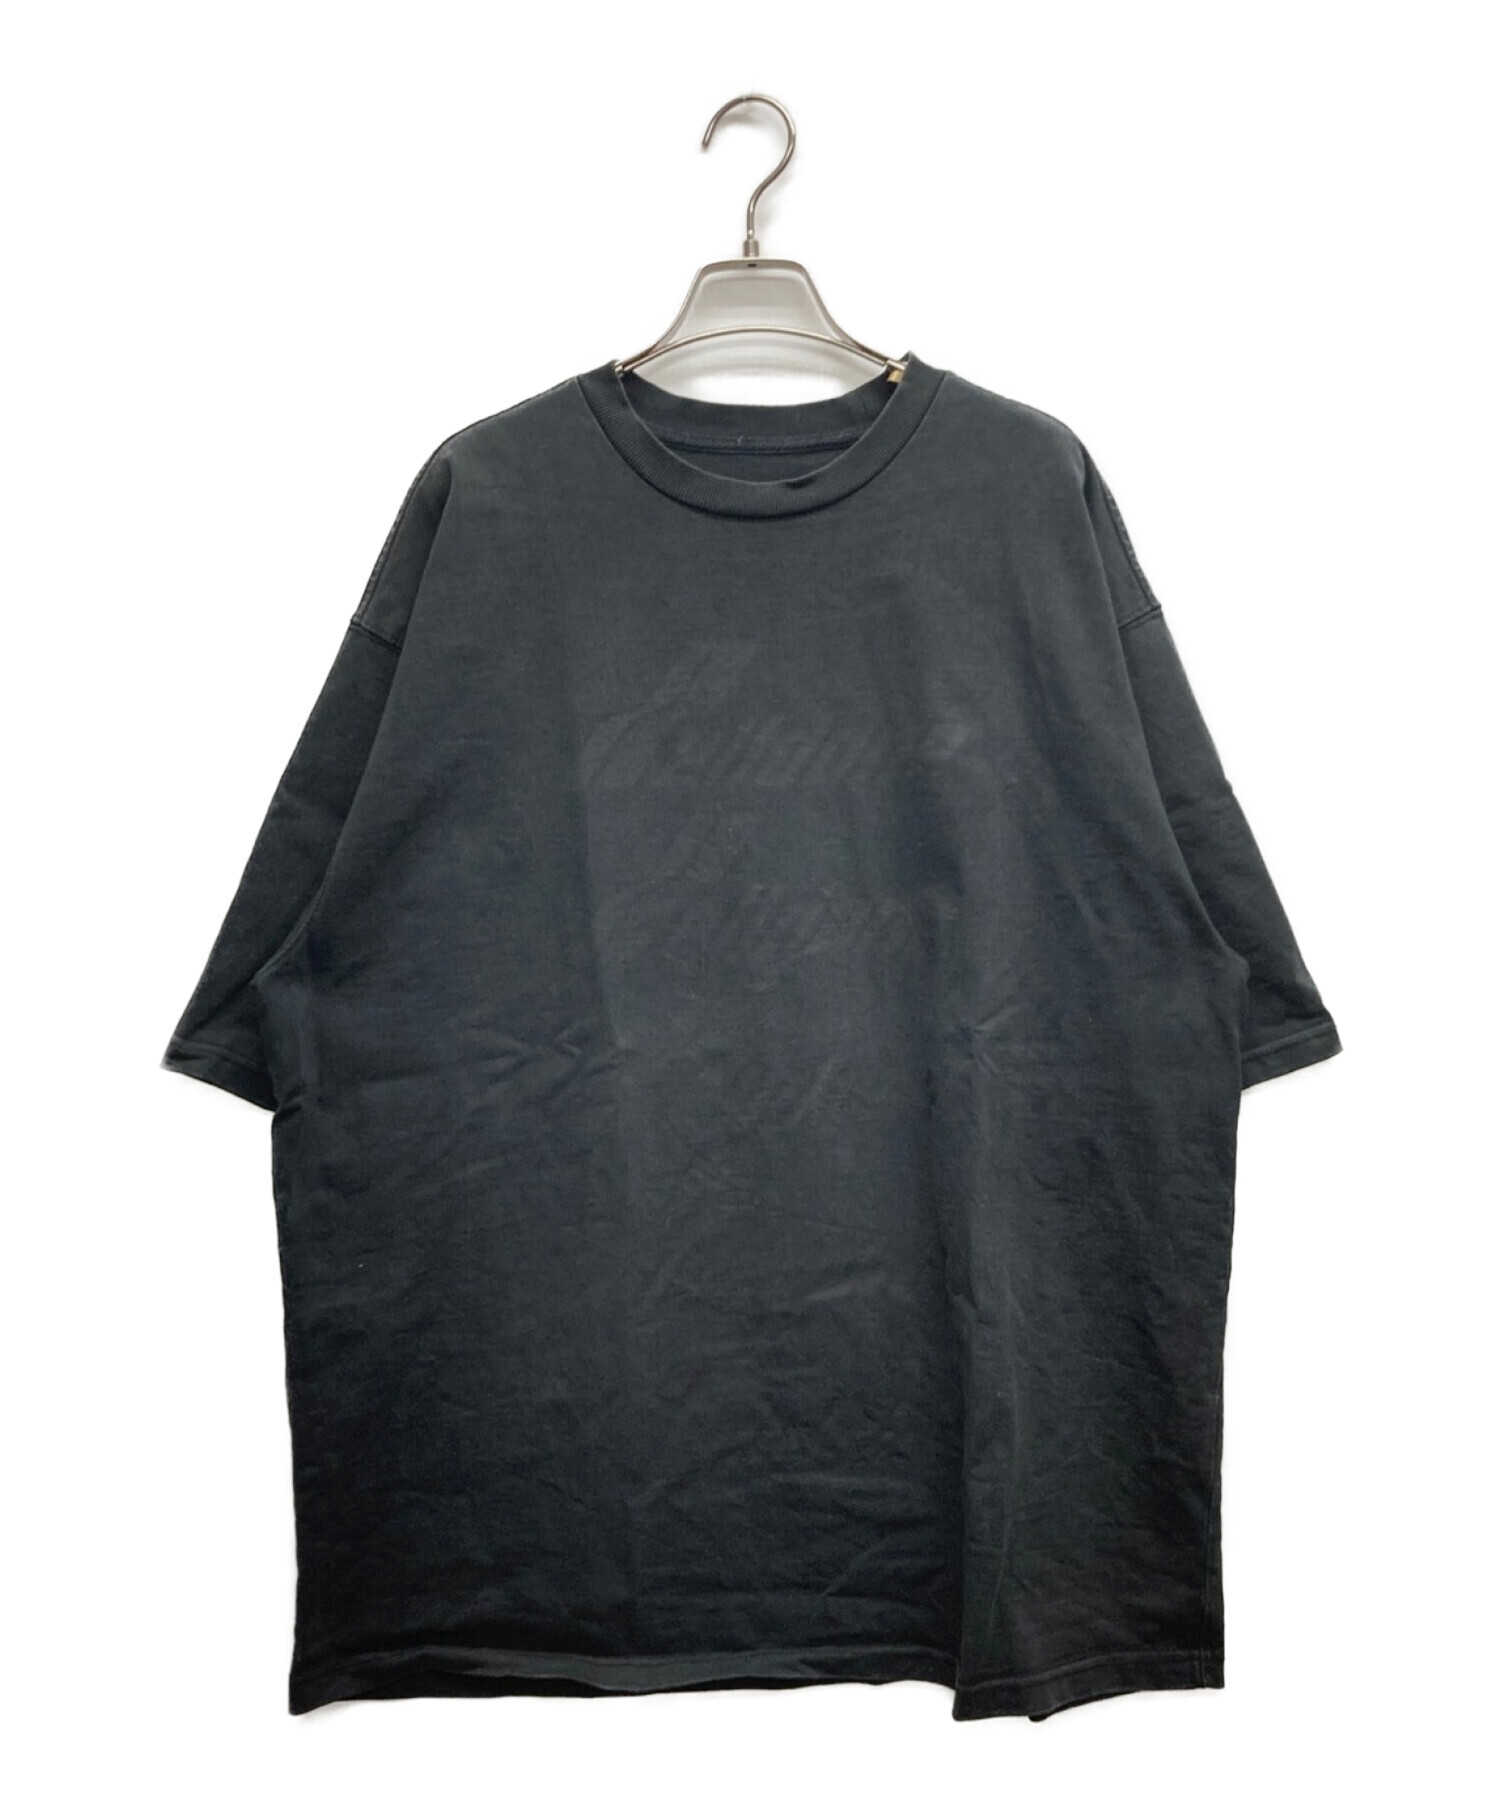 WE11DONE (ウェルダン) FRONT LOGO T-SHIRT/フロントロゴTシャツ ブラック サイズ:M